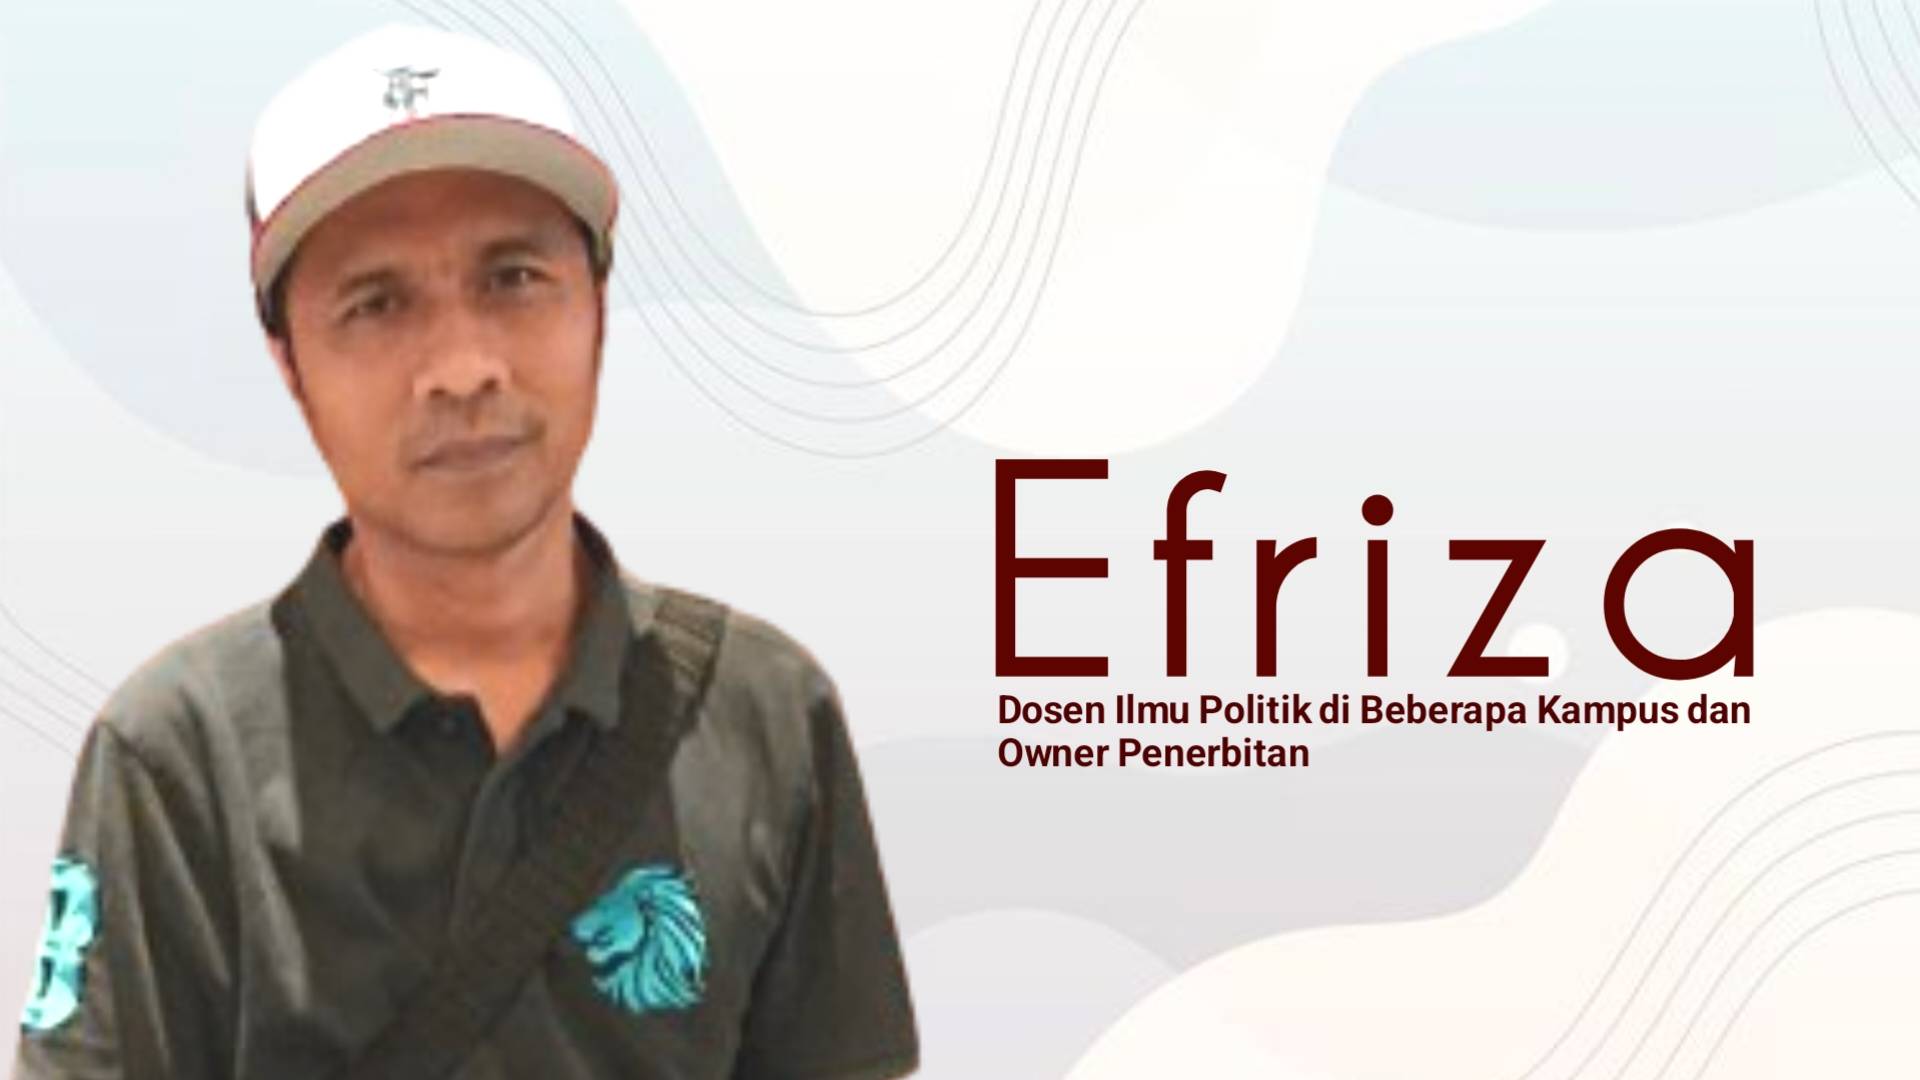 Kemungkinan Anies dan PDIP di Pilkada DKI Jakarta